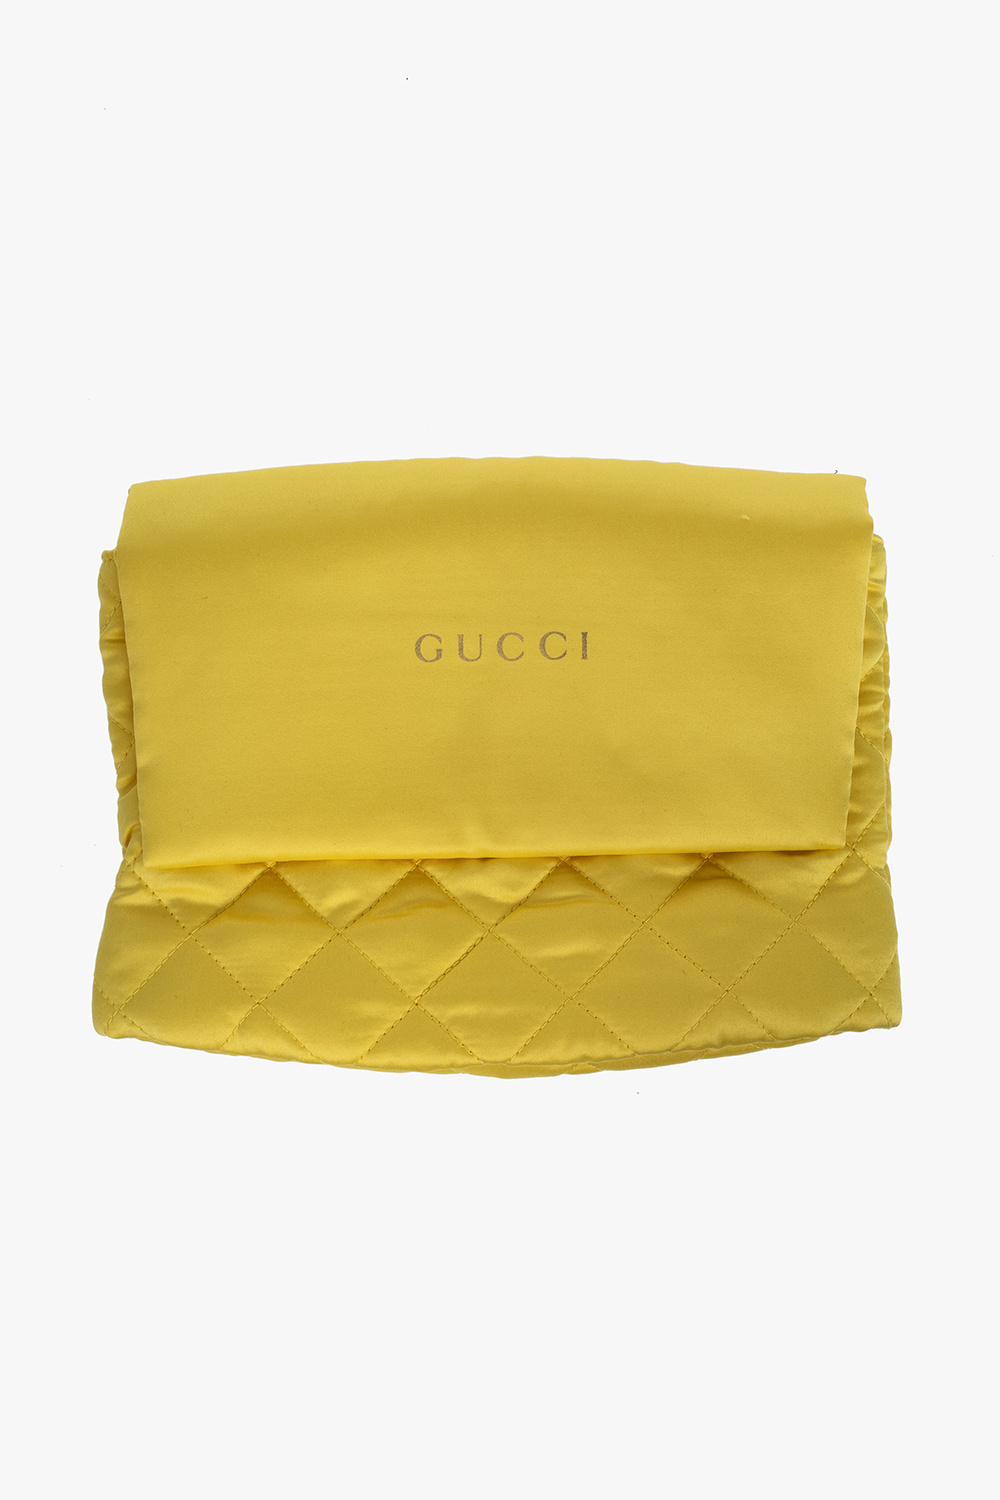 Gucci gucci origial gg grg sneaker ebonymilk 546551 hvki